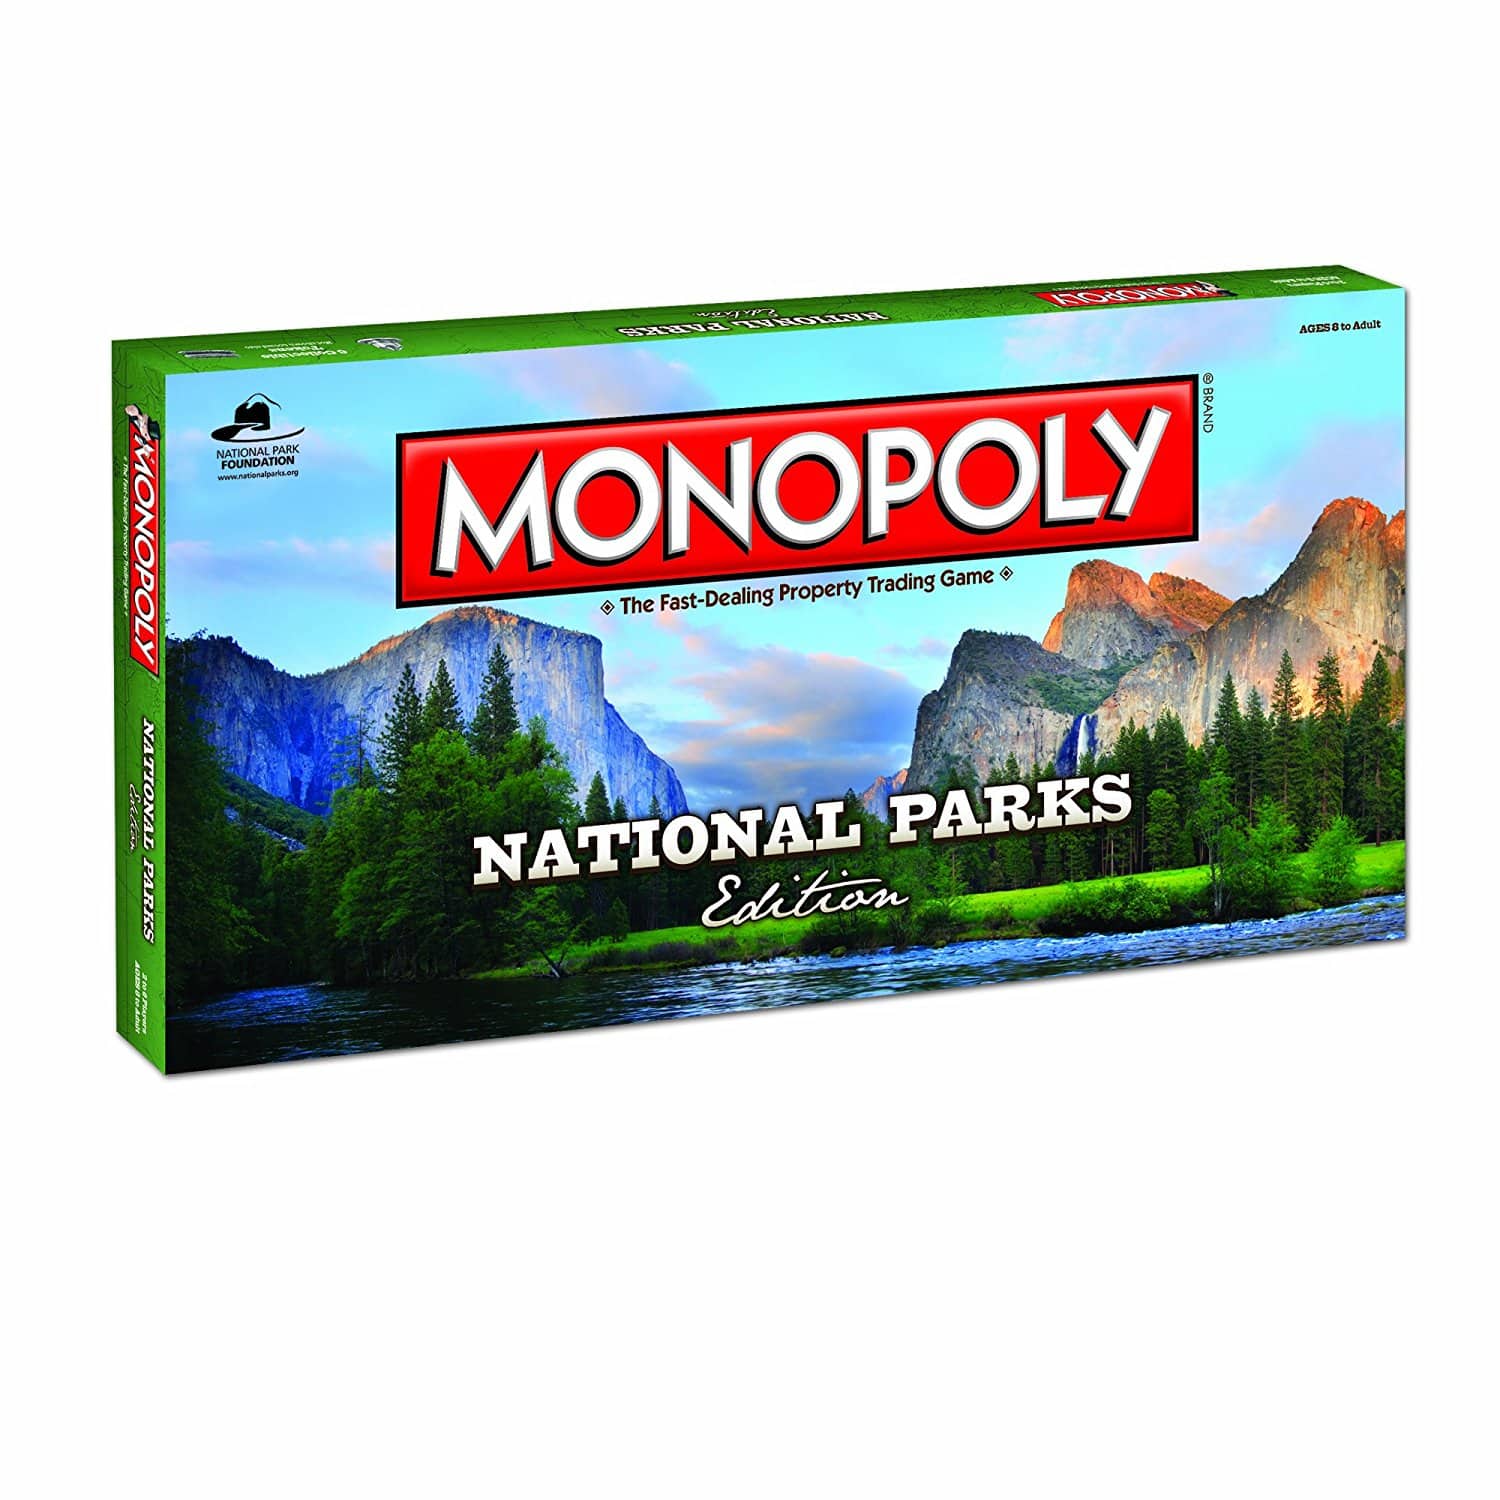 LIGHTNING DEAL ALERT! MONOPOLY National Parks Edition